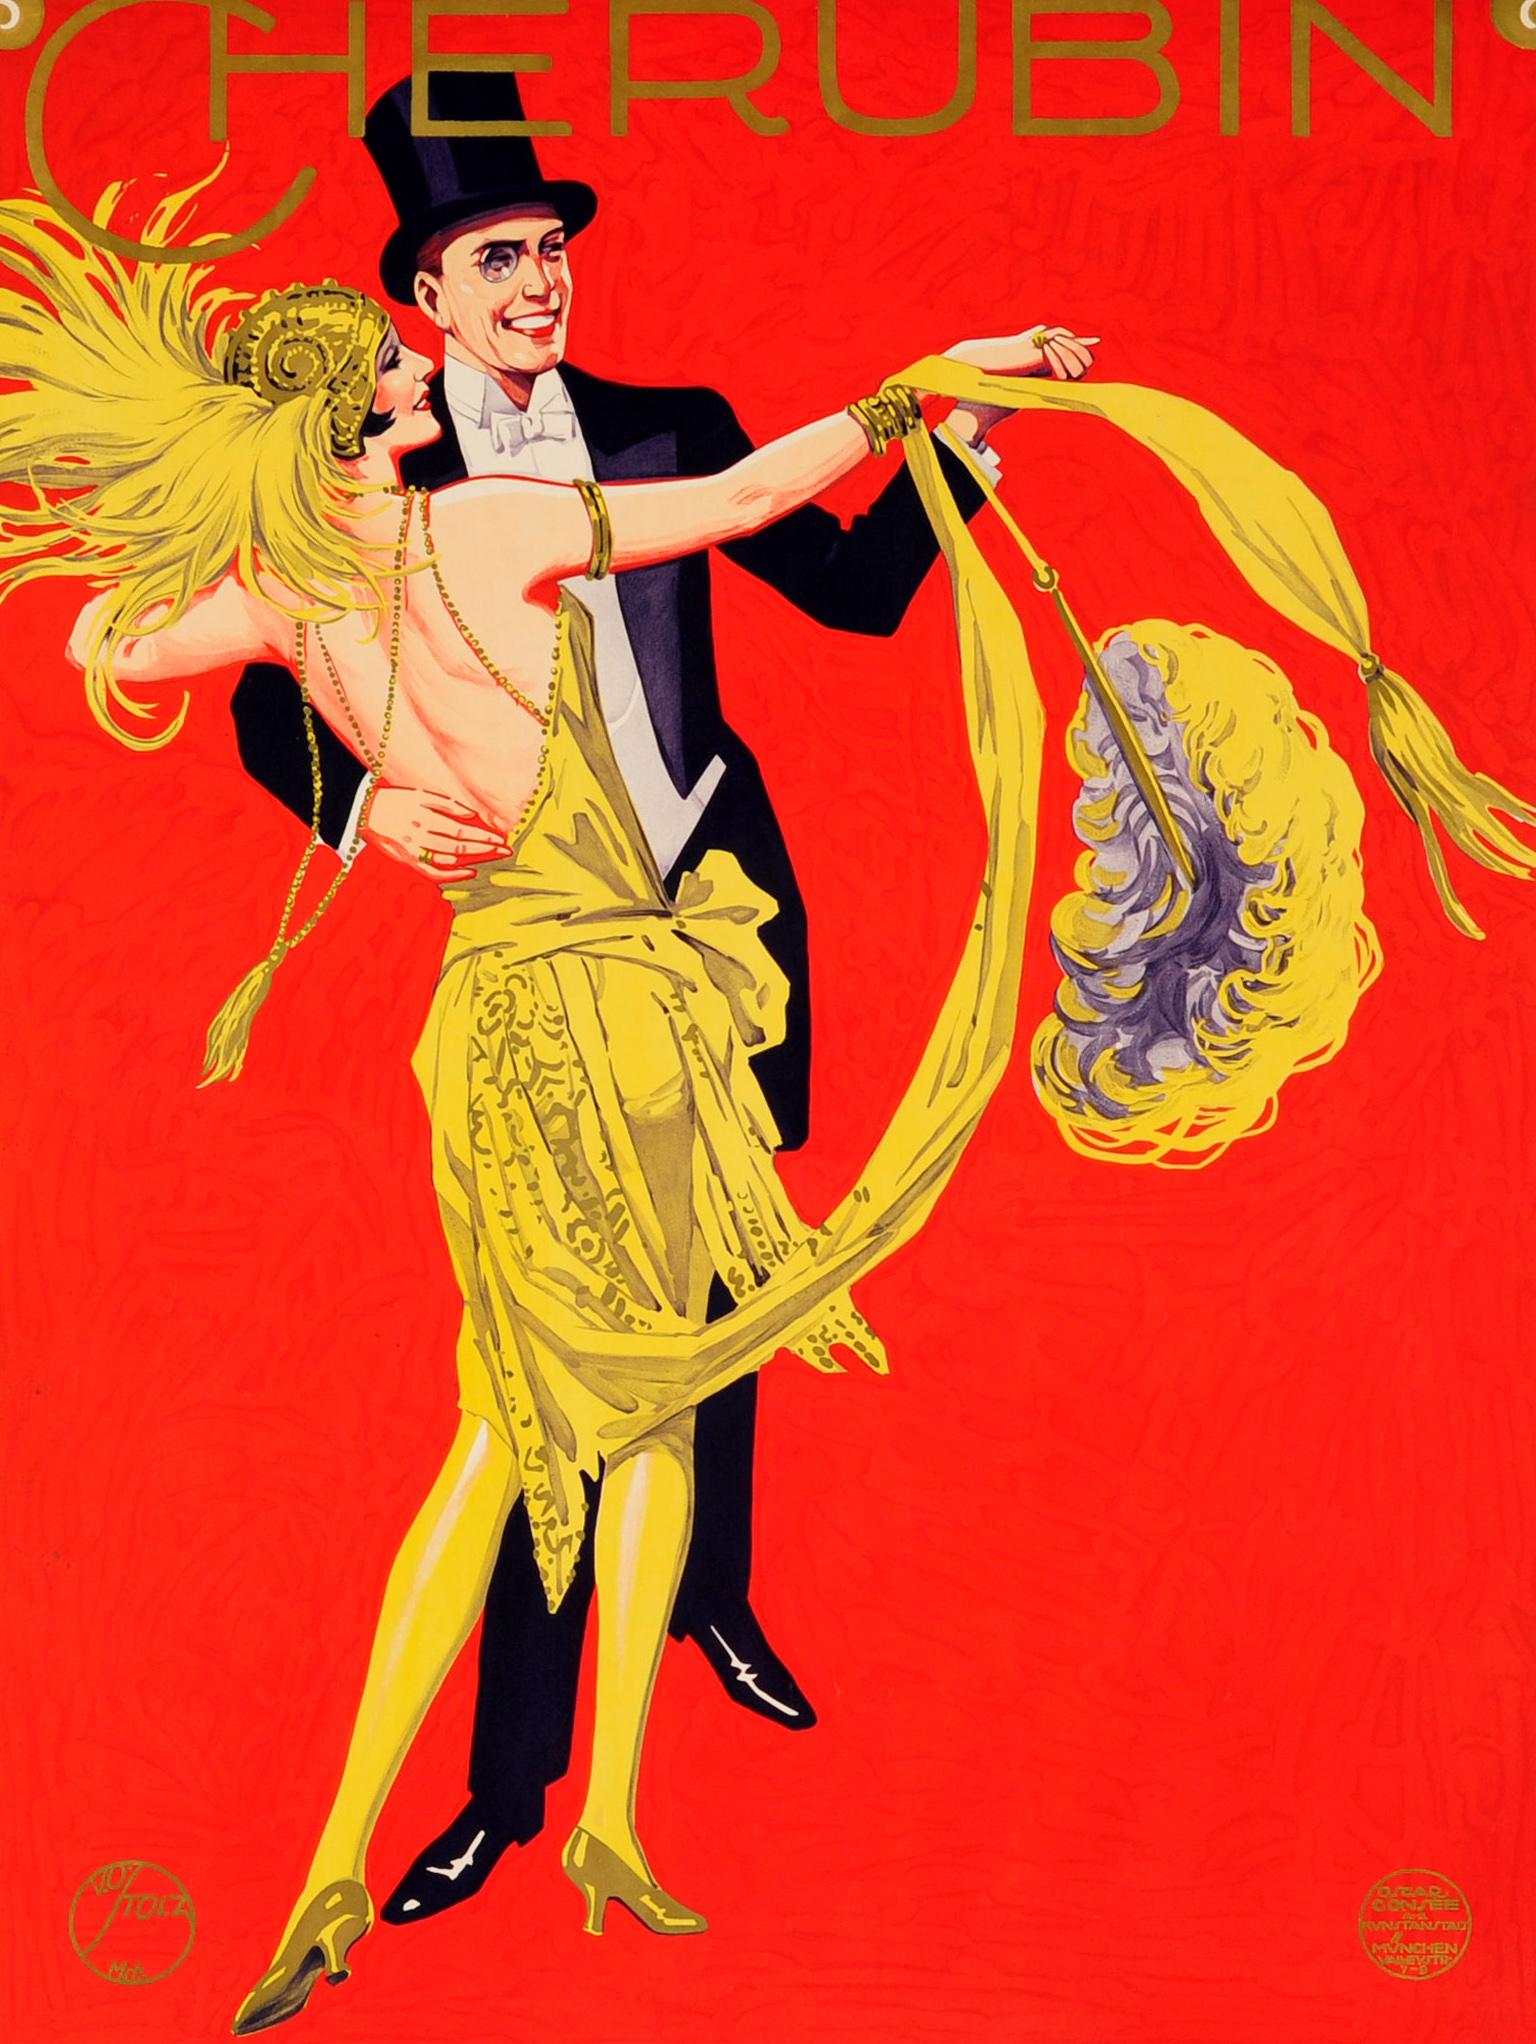 Originales deutsches Werbeplakat für den Münchner Fasching am 7. und 8. Januar 1928 im Cherubin mit einer farbenfrohen Illustration von Viktor Otto Stolz (1874-1955) eines lächelnden Paares, das vor rotem Hintergrund tanzt. Der elegant gekleidete